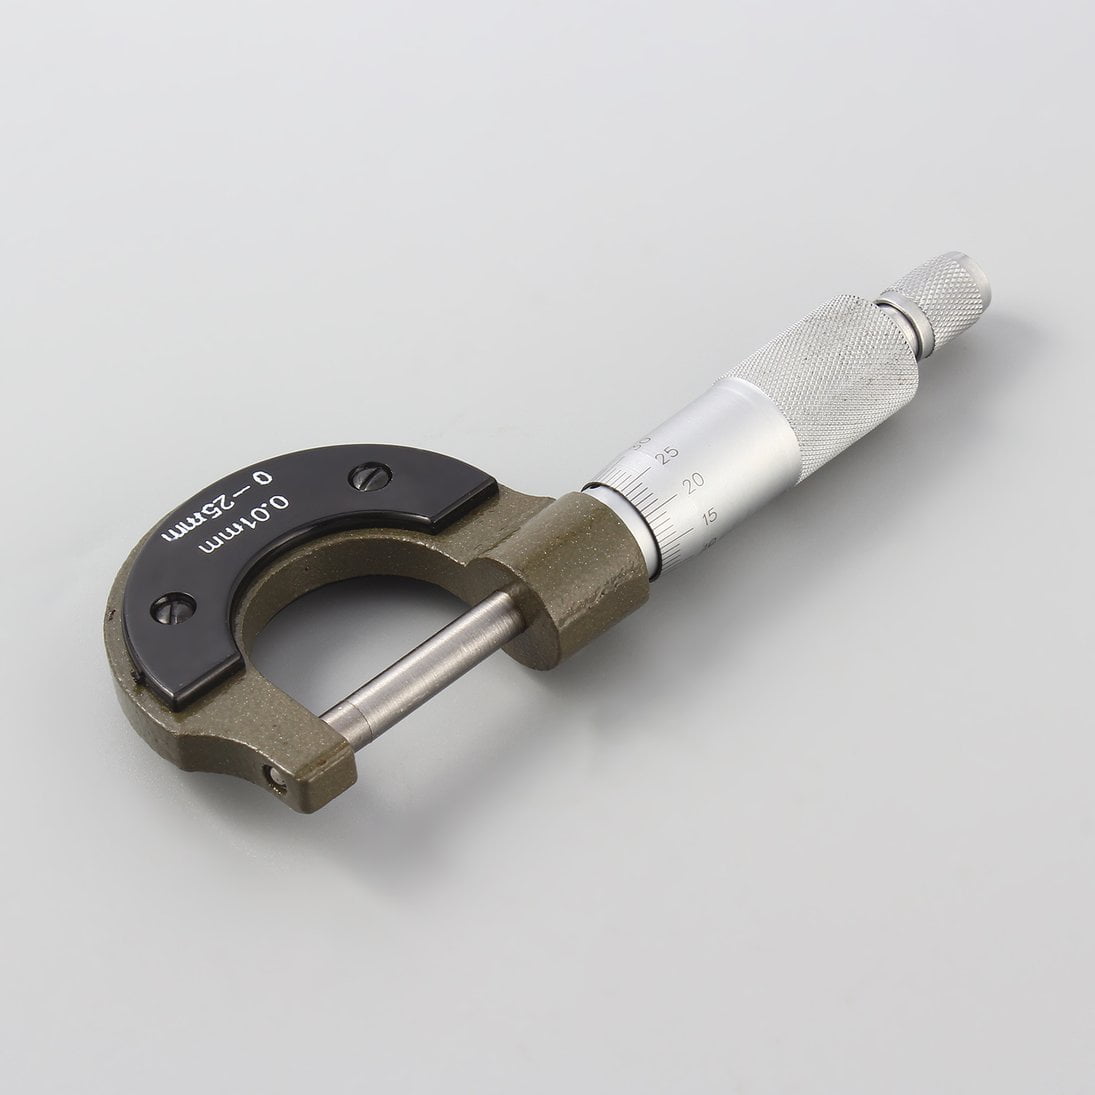 micrometer tool